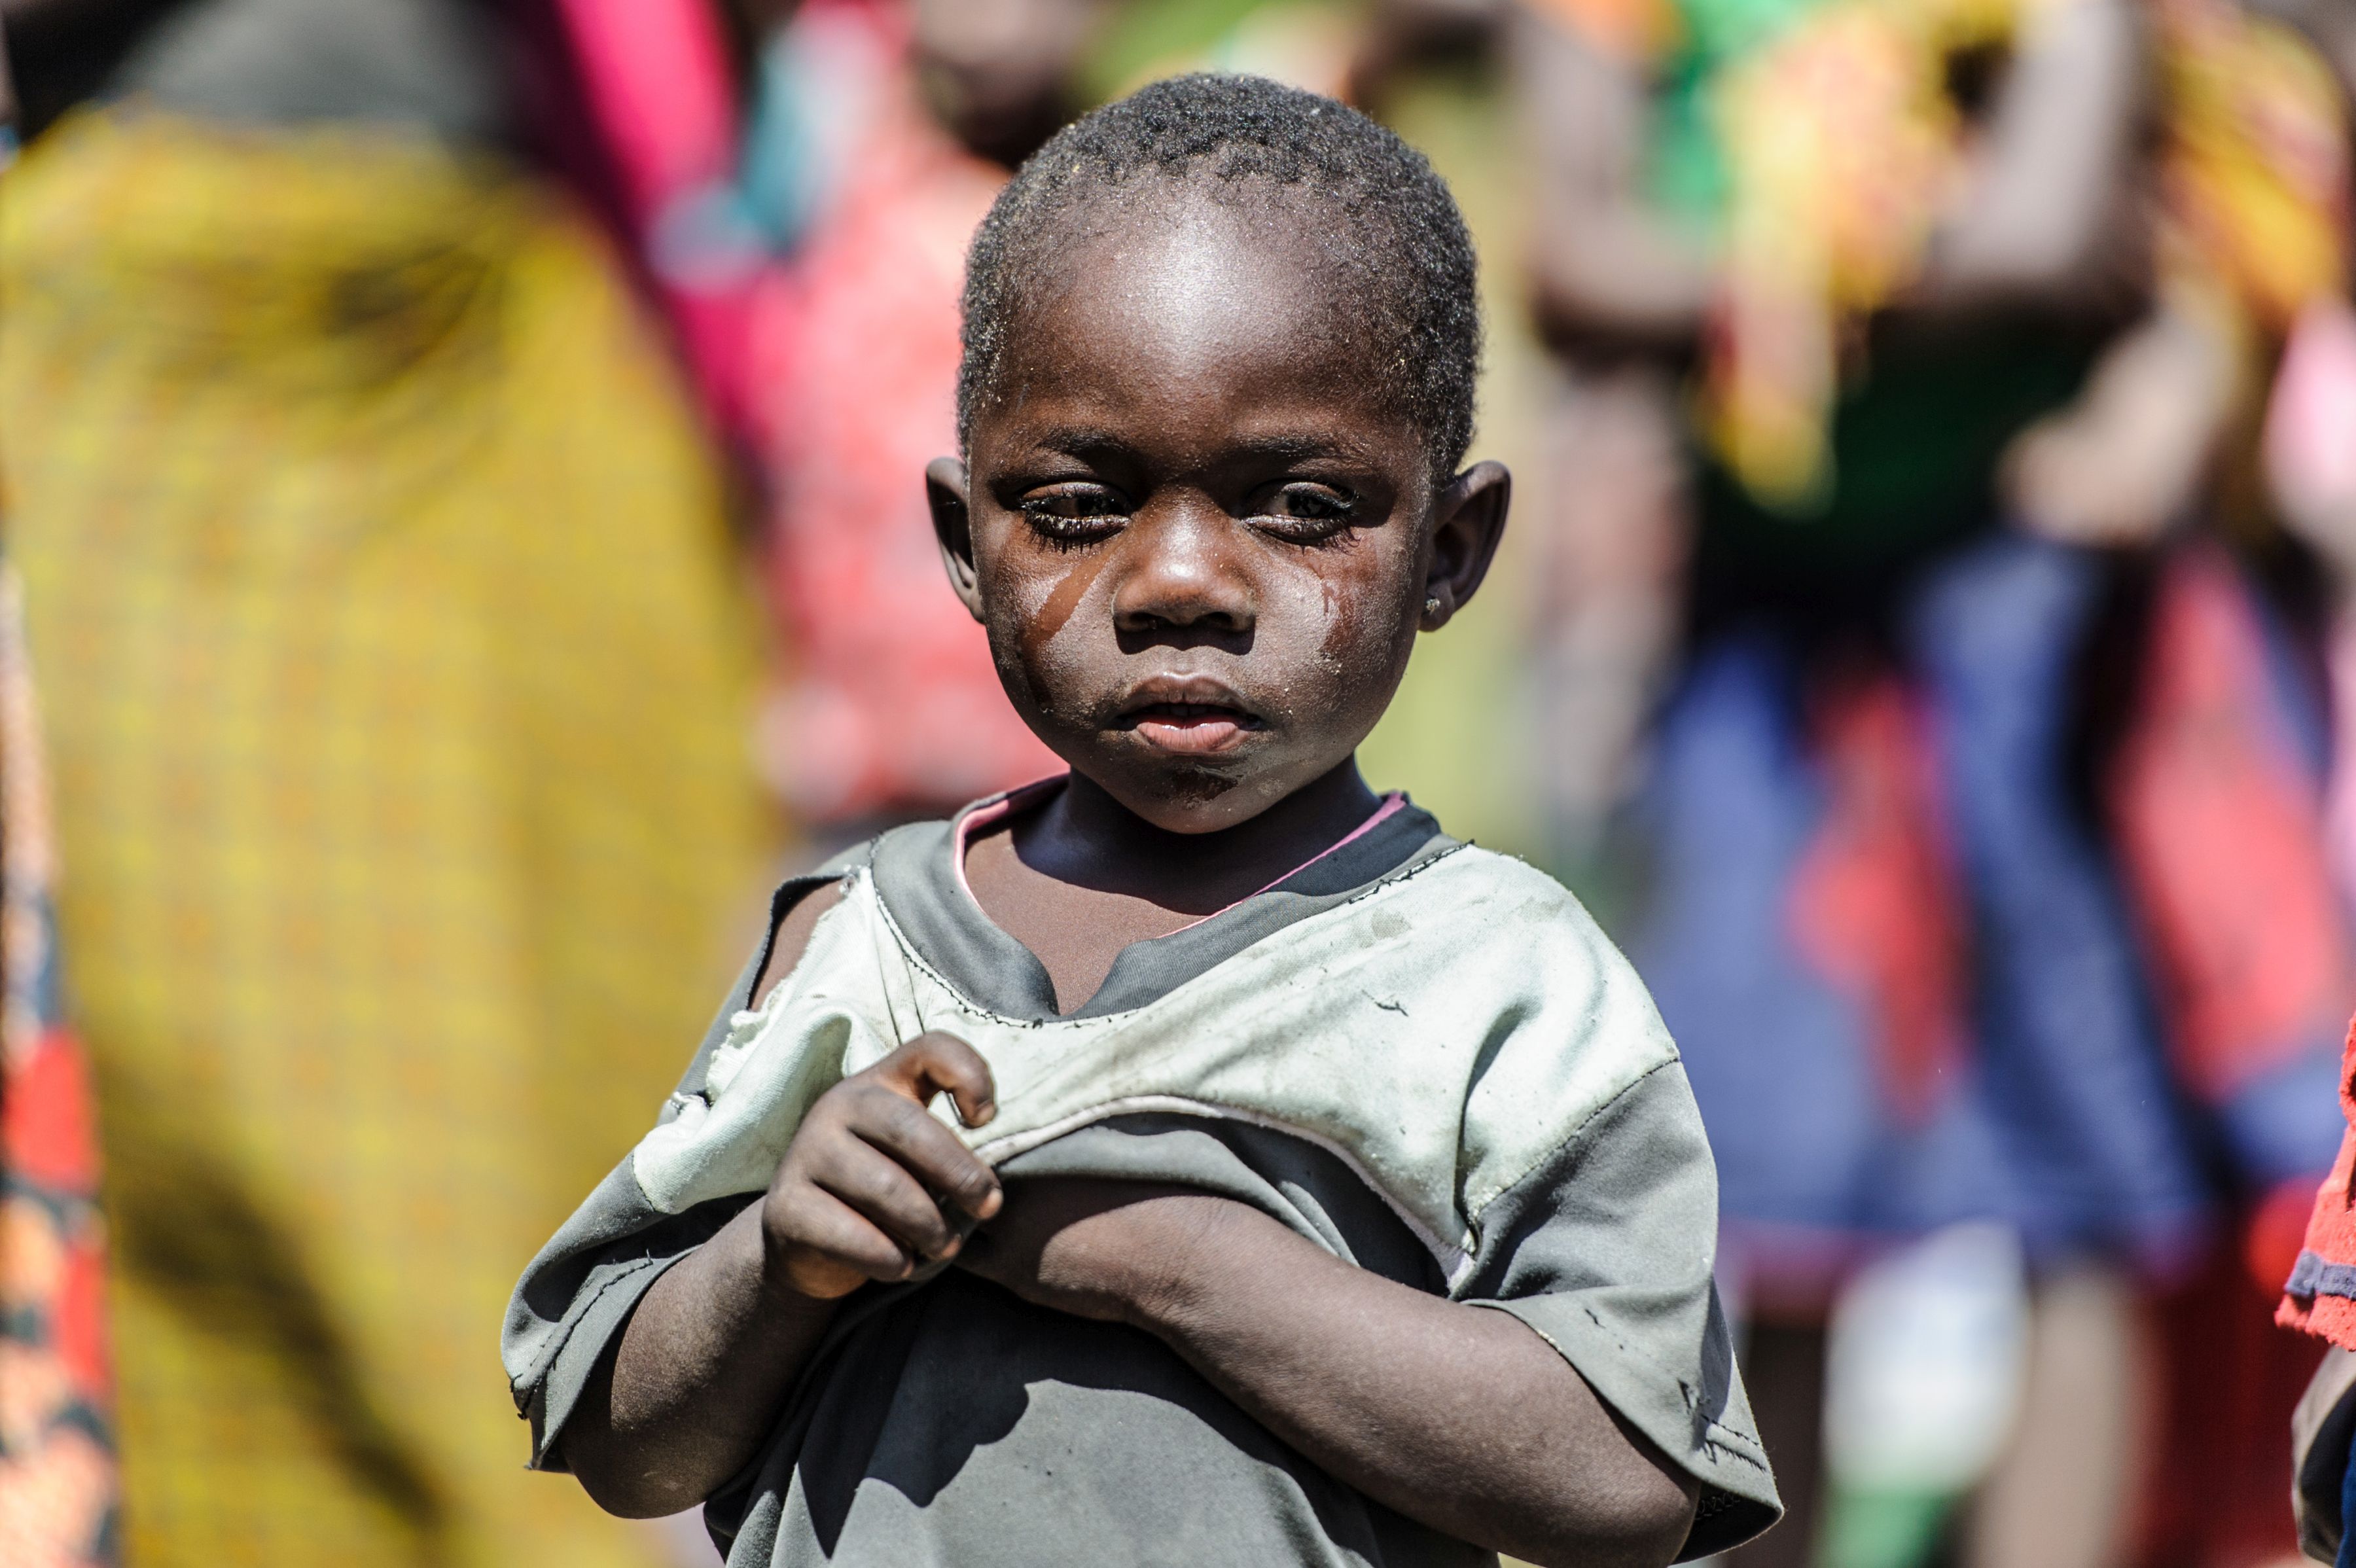 Ferma il tracoma per sempre!-Sightsavers Italia Onlus